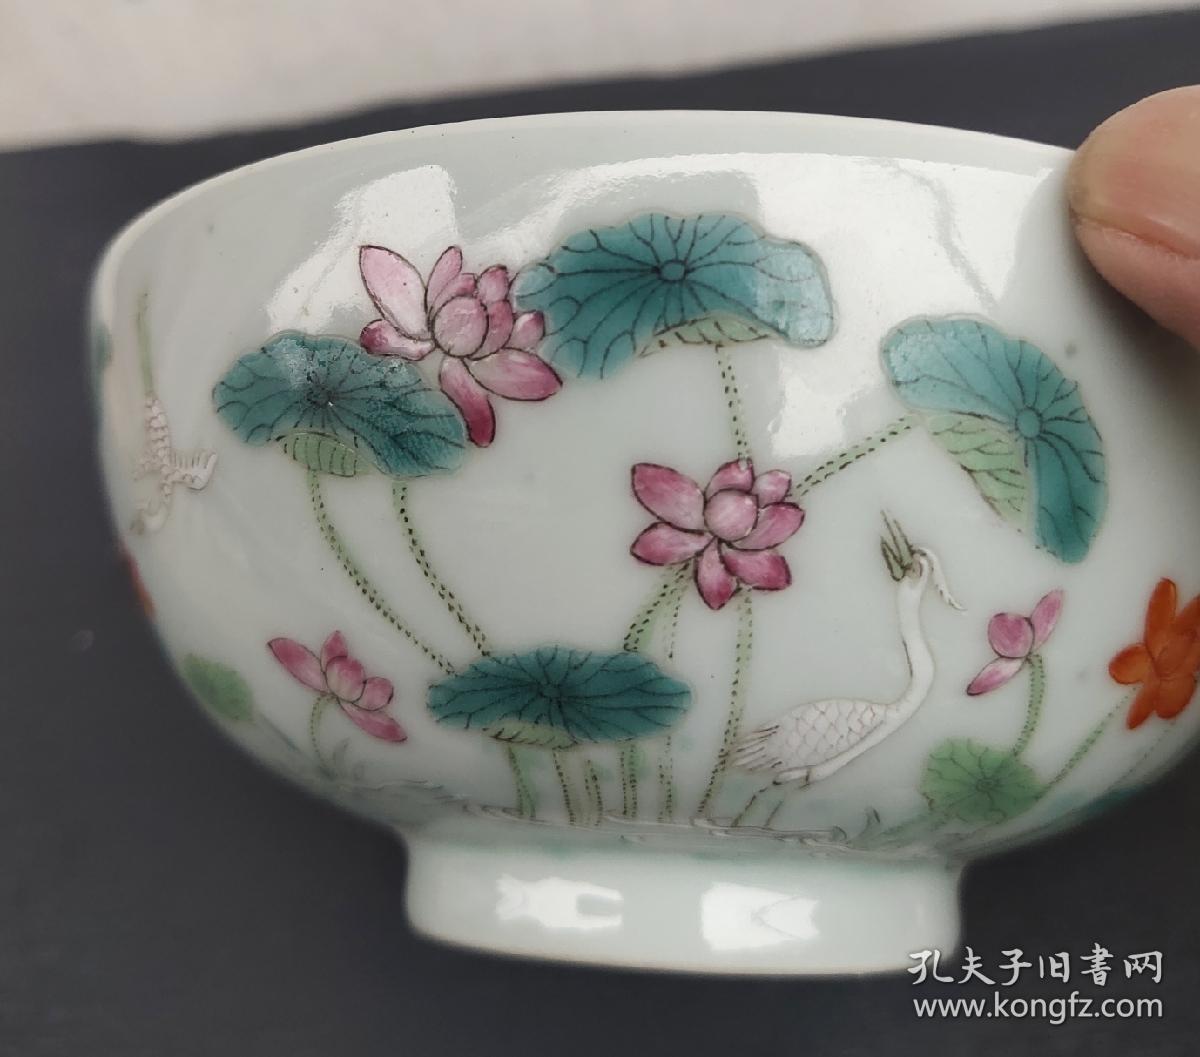 清代瓷器官窑瓷器五彩茶碗茶杯茶壶压手杯感兴趣的话点我想要和我私聊